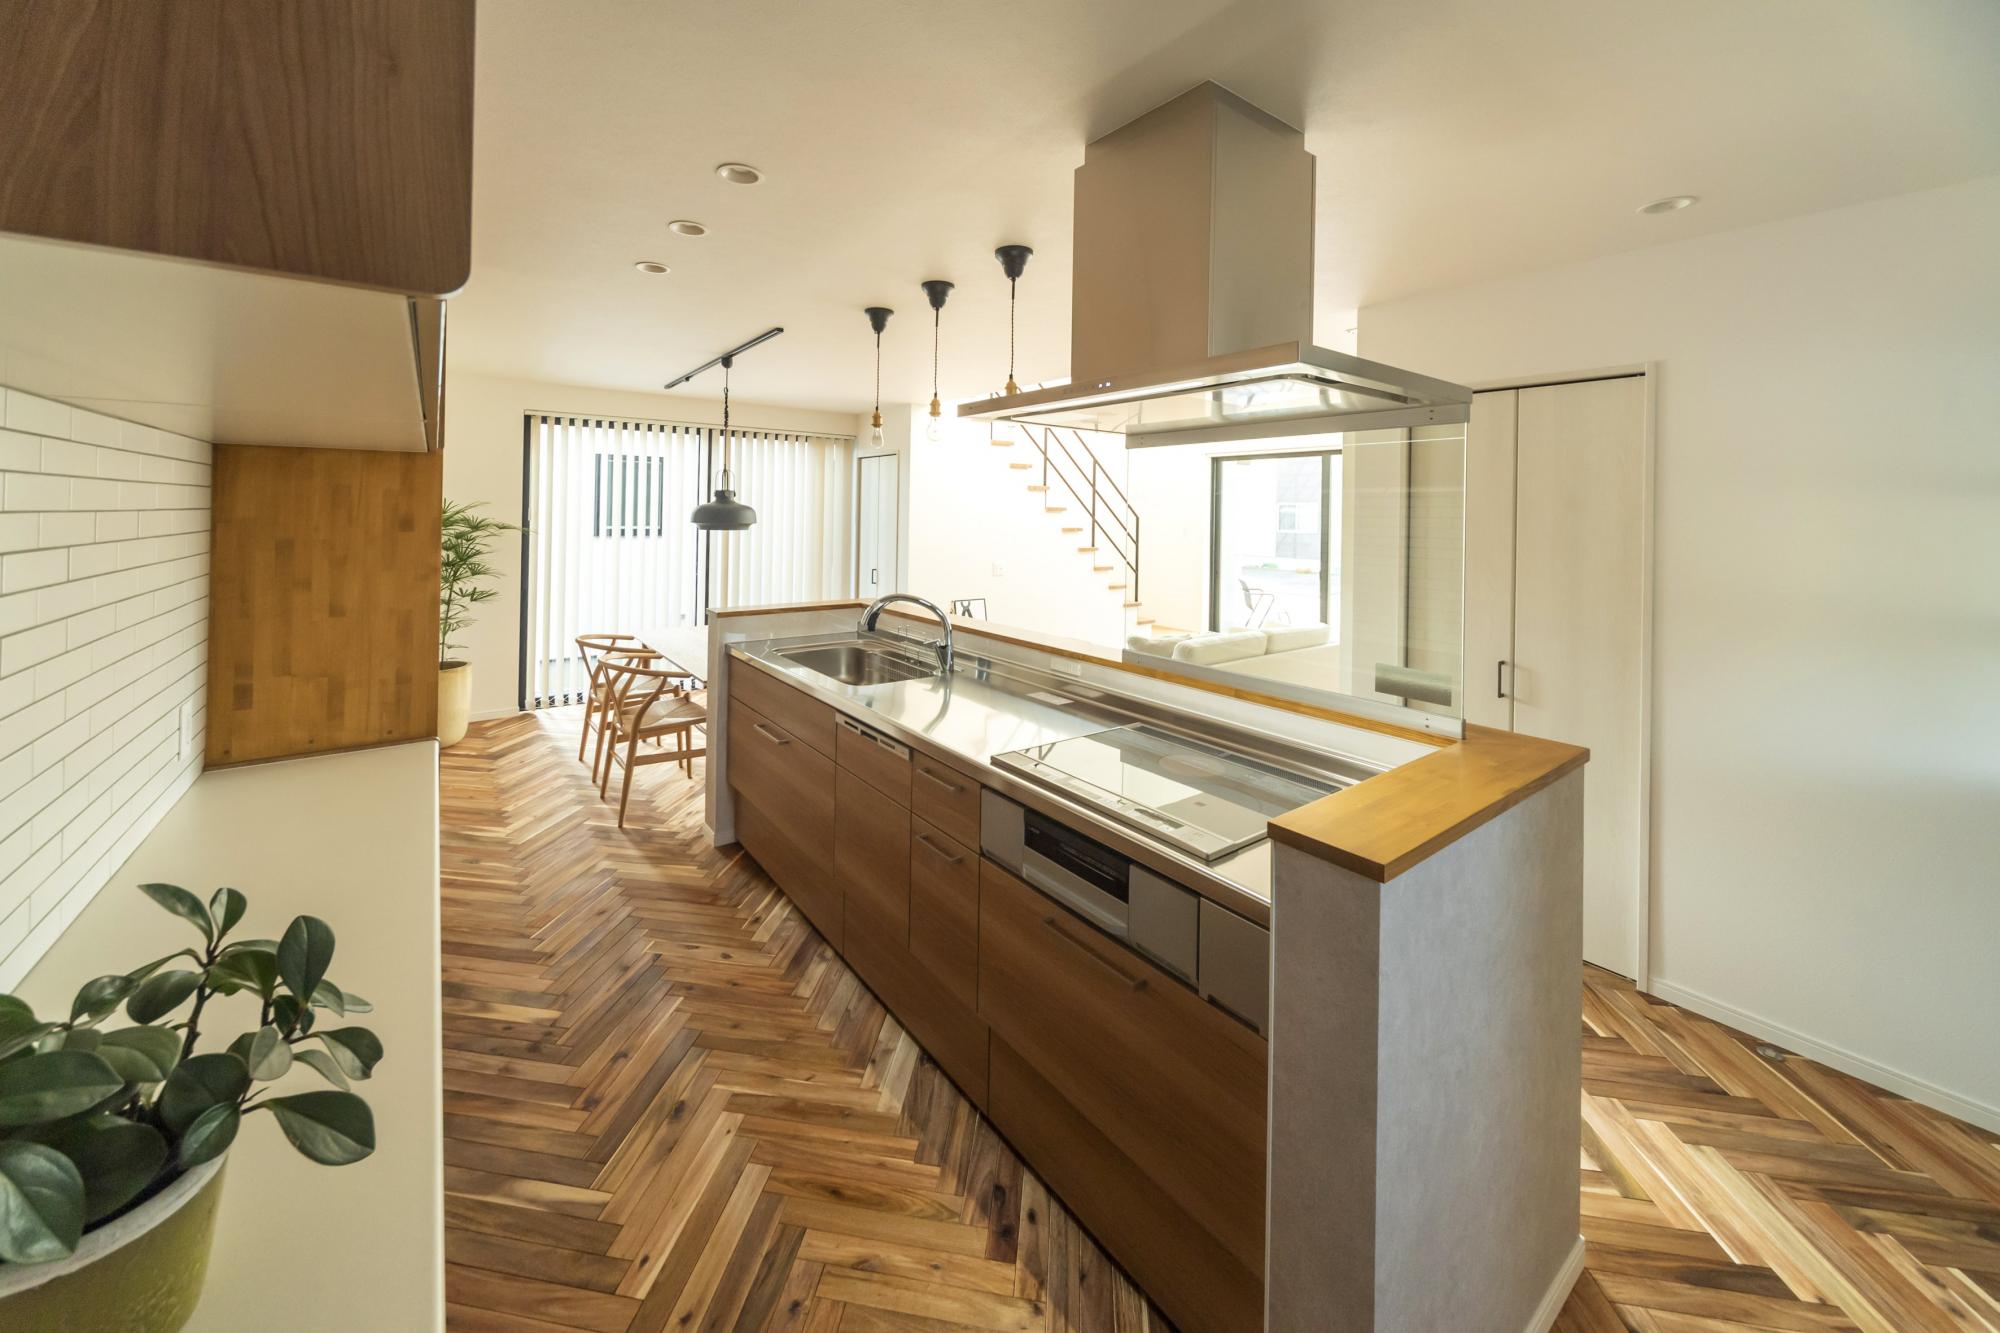 アイランドキッチンのメリット デメリット 家づくりお役立ち情報 富山の注文住宅なら自然素材のマグハウス